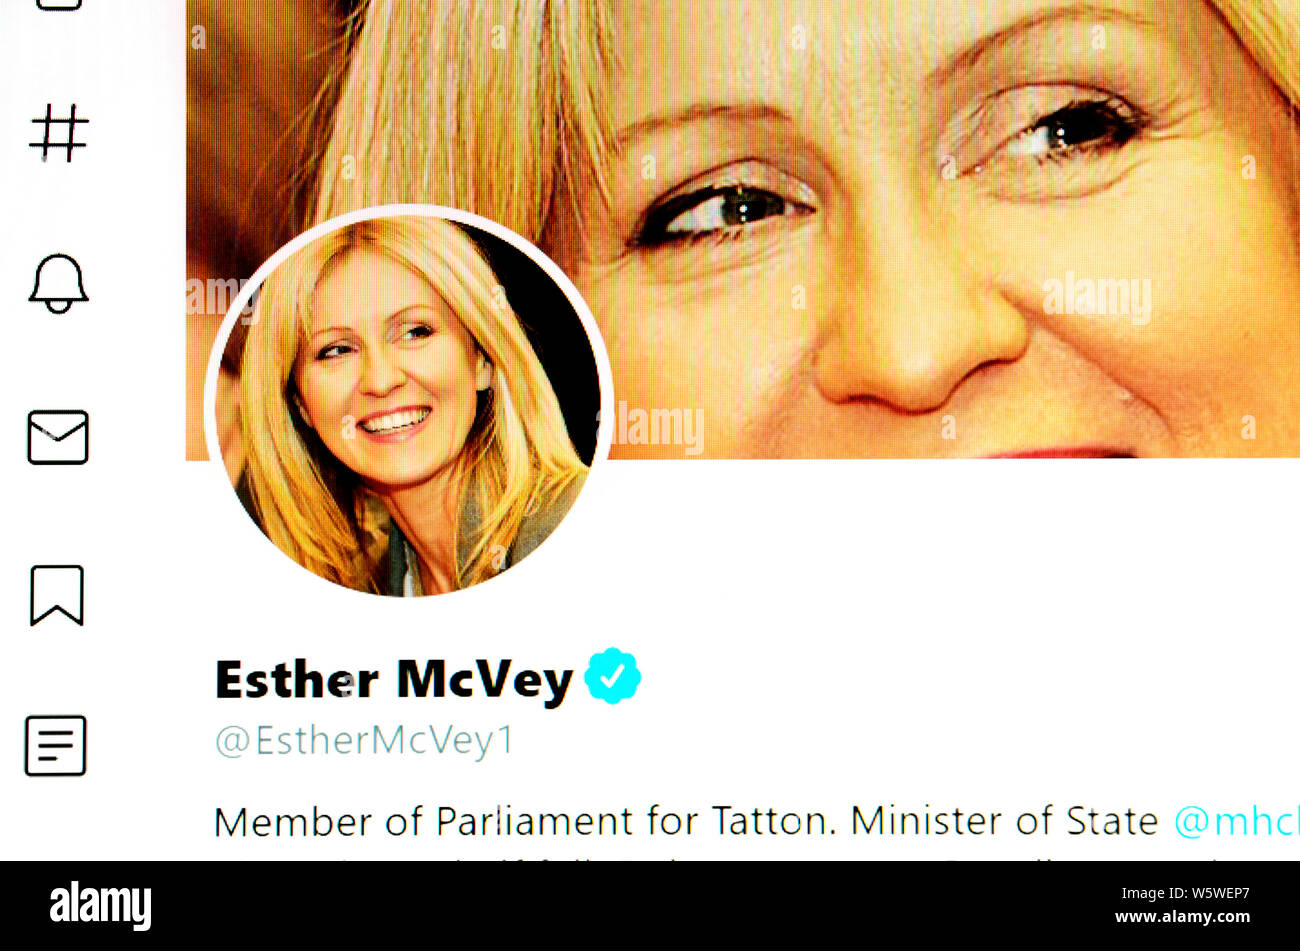 Pagina su Twitter (luglio 2019) - Rt Hon Esther McVey MP - Il Ministro di Stato presso il Ministero delle abitazioni, comunità e governo locale Foto Stock